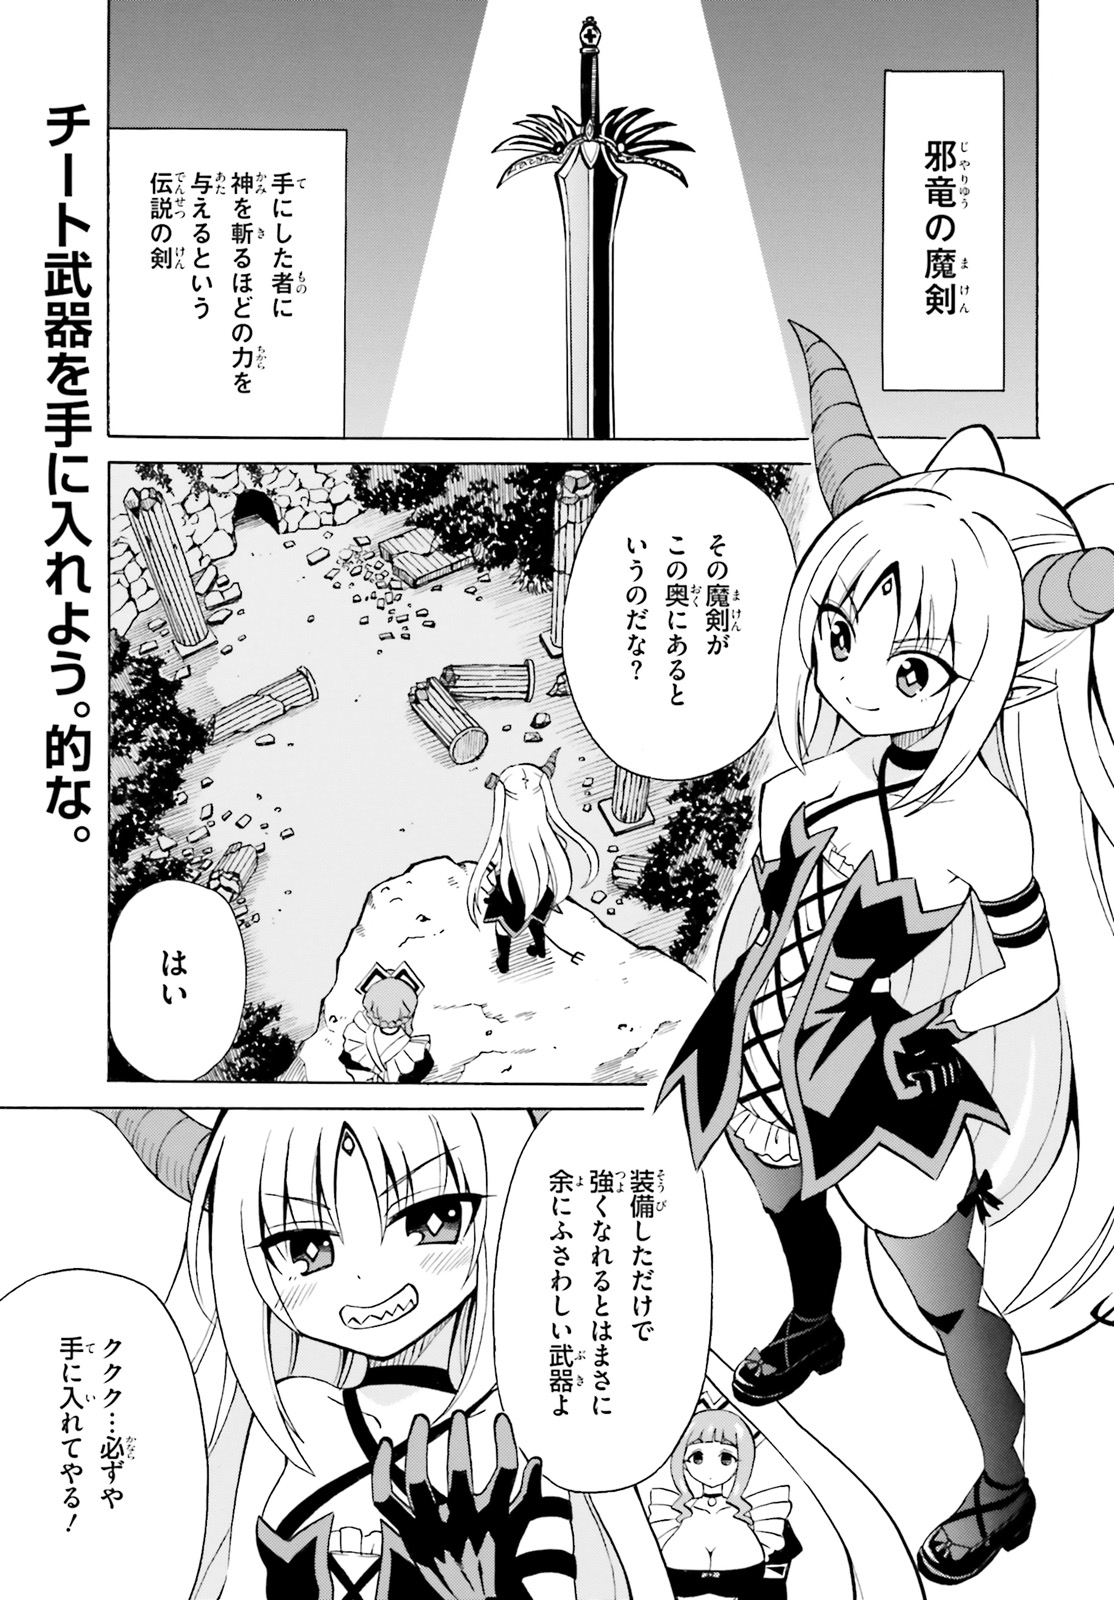 Beriaru-sama wa Shitenno no Naka Demo × × - Chapter 5 - Page 1